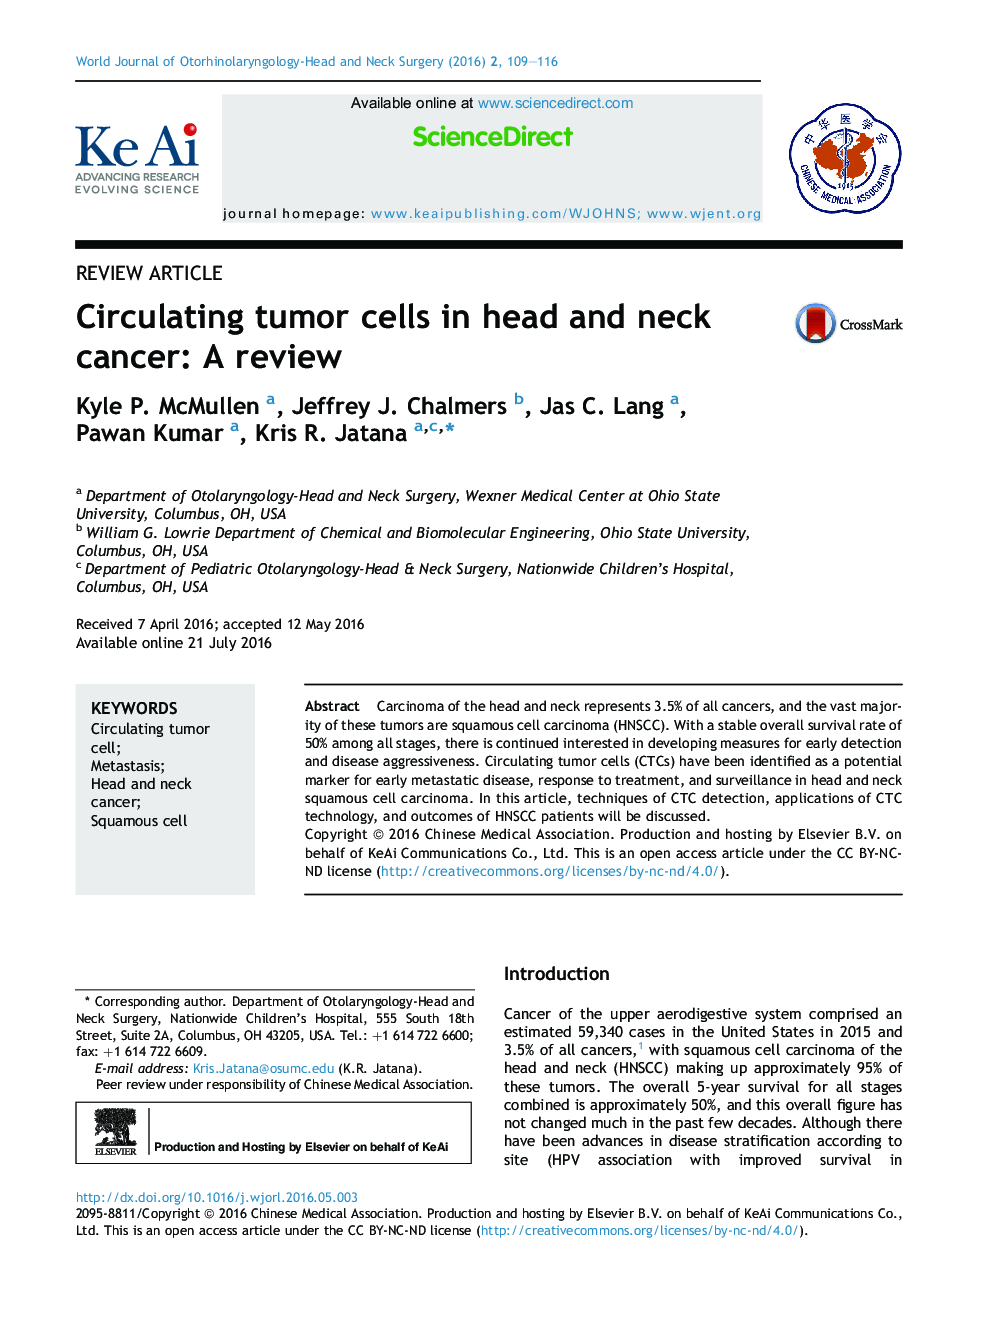 سلول های تومور سرطانی در سر و گردن: بررسی 